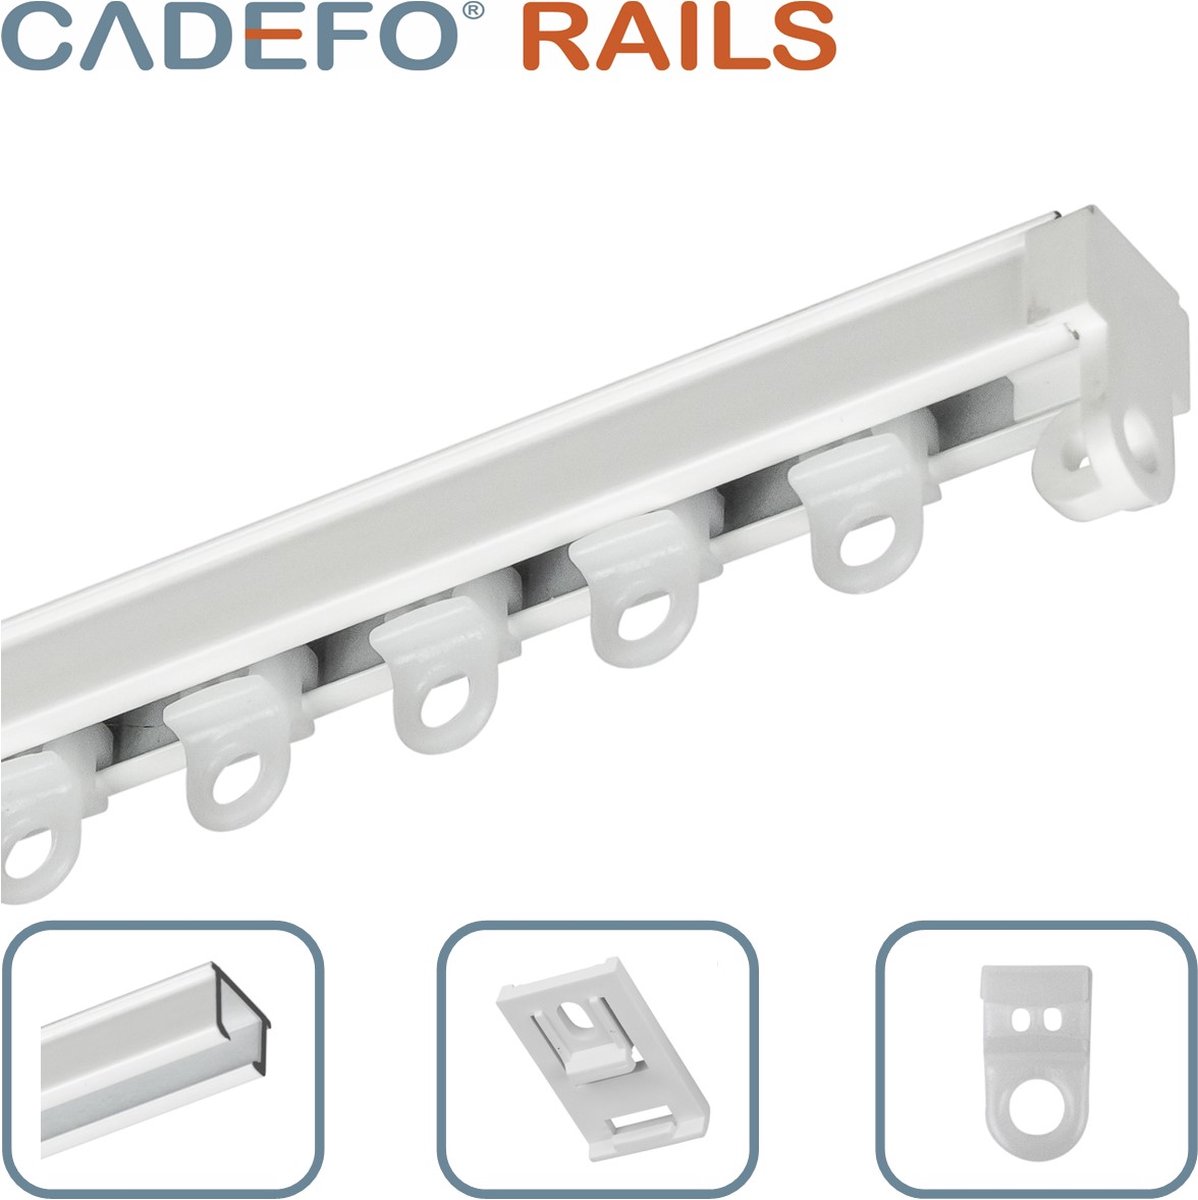 CADEFO RAILS (451 - 500 cm) Gordijnrails - Compleet op maat! - UIT 1 STUK - Leverbaar tot 6 meter - Plafondbevestiging - Lengte 464 cm